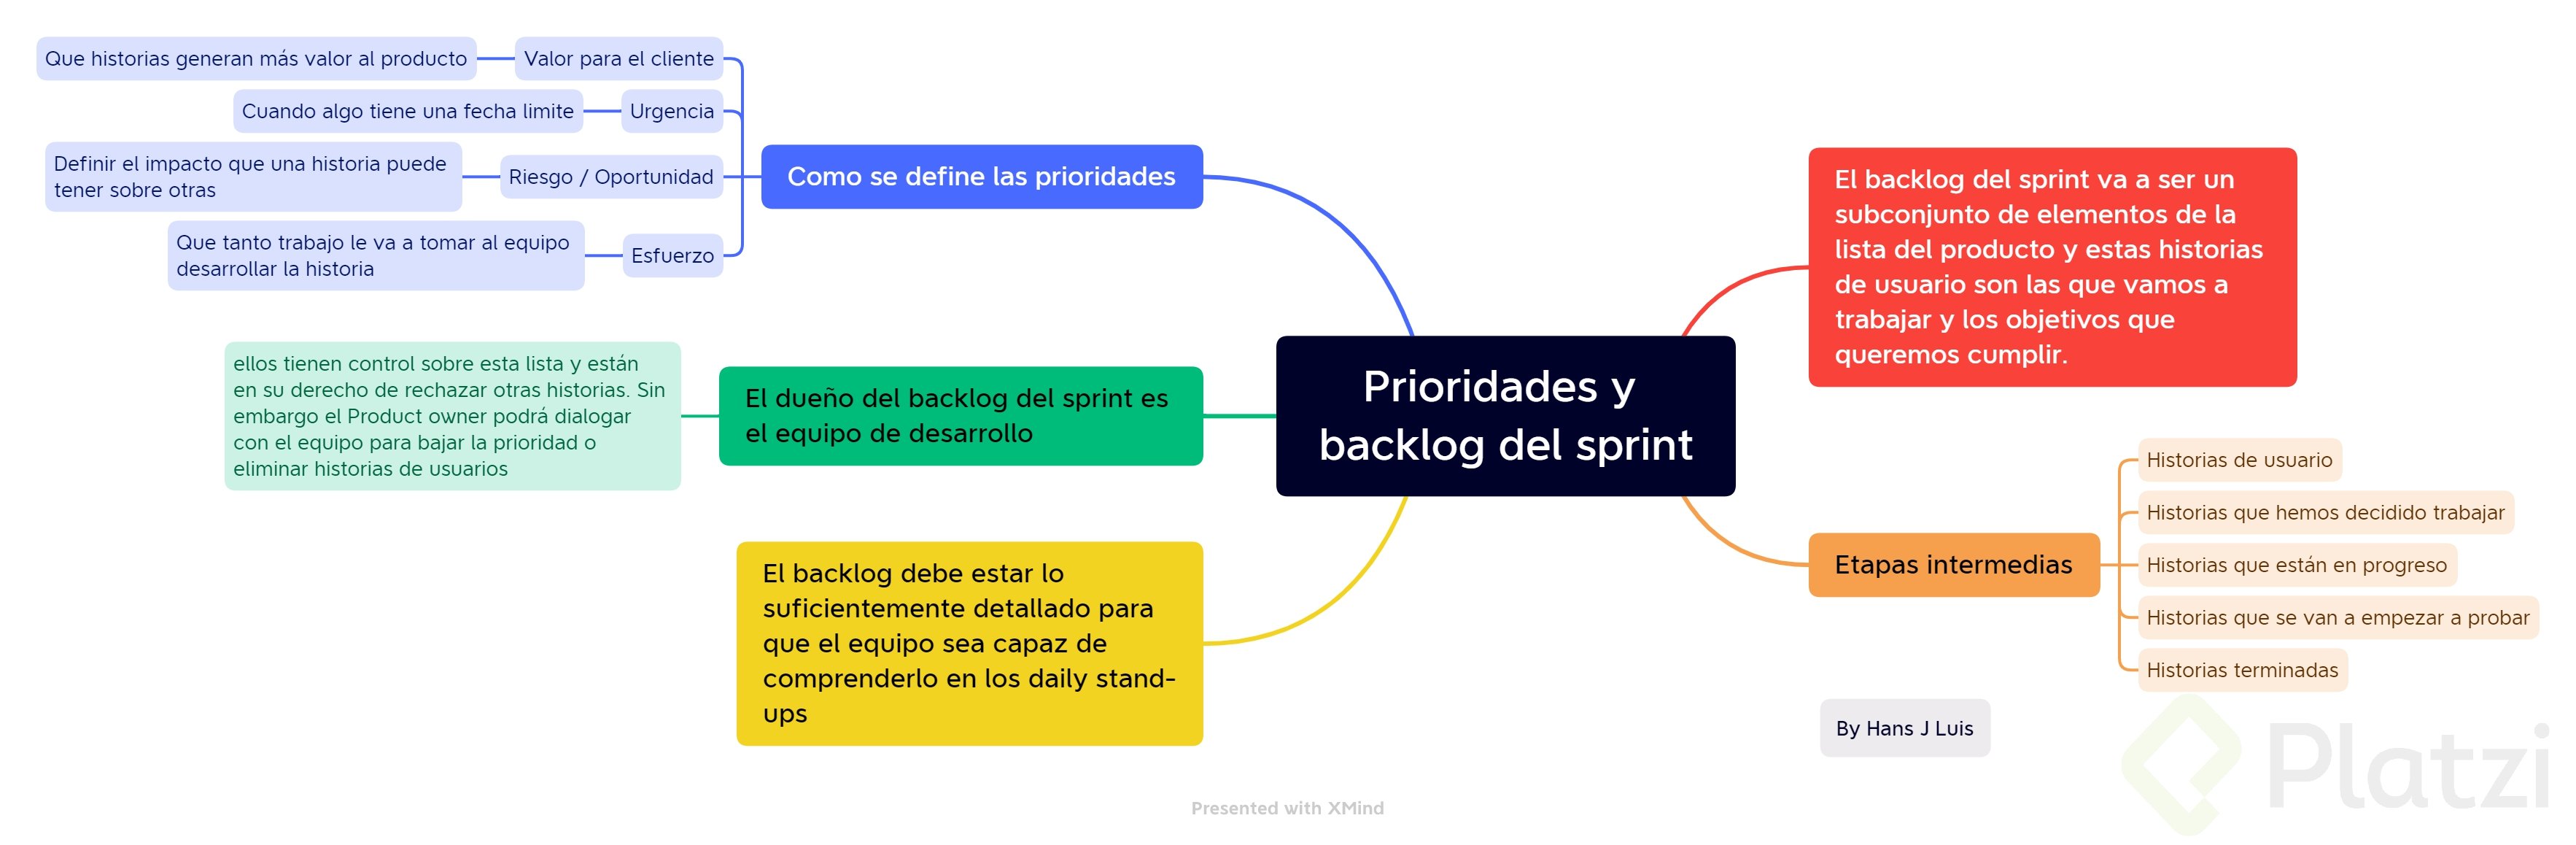 Prioridades y backlog del sprint.png